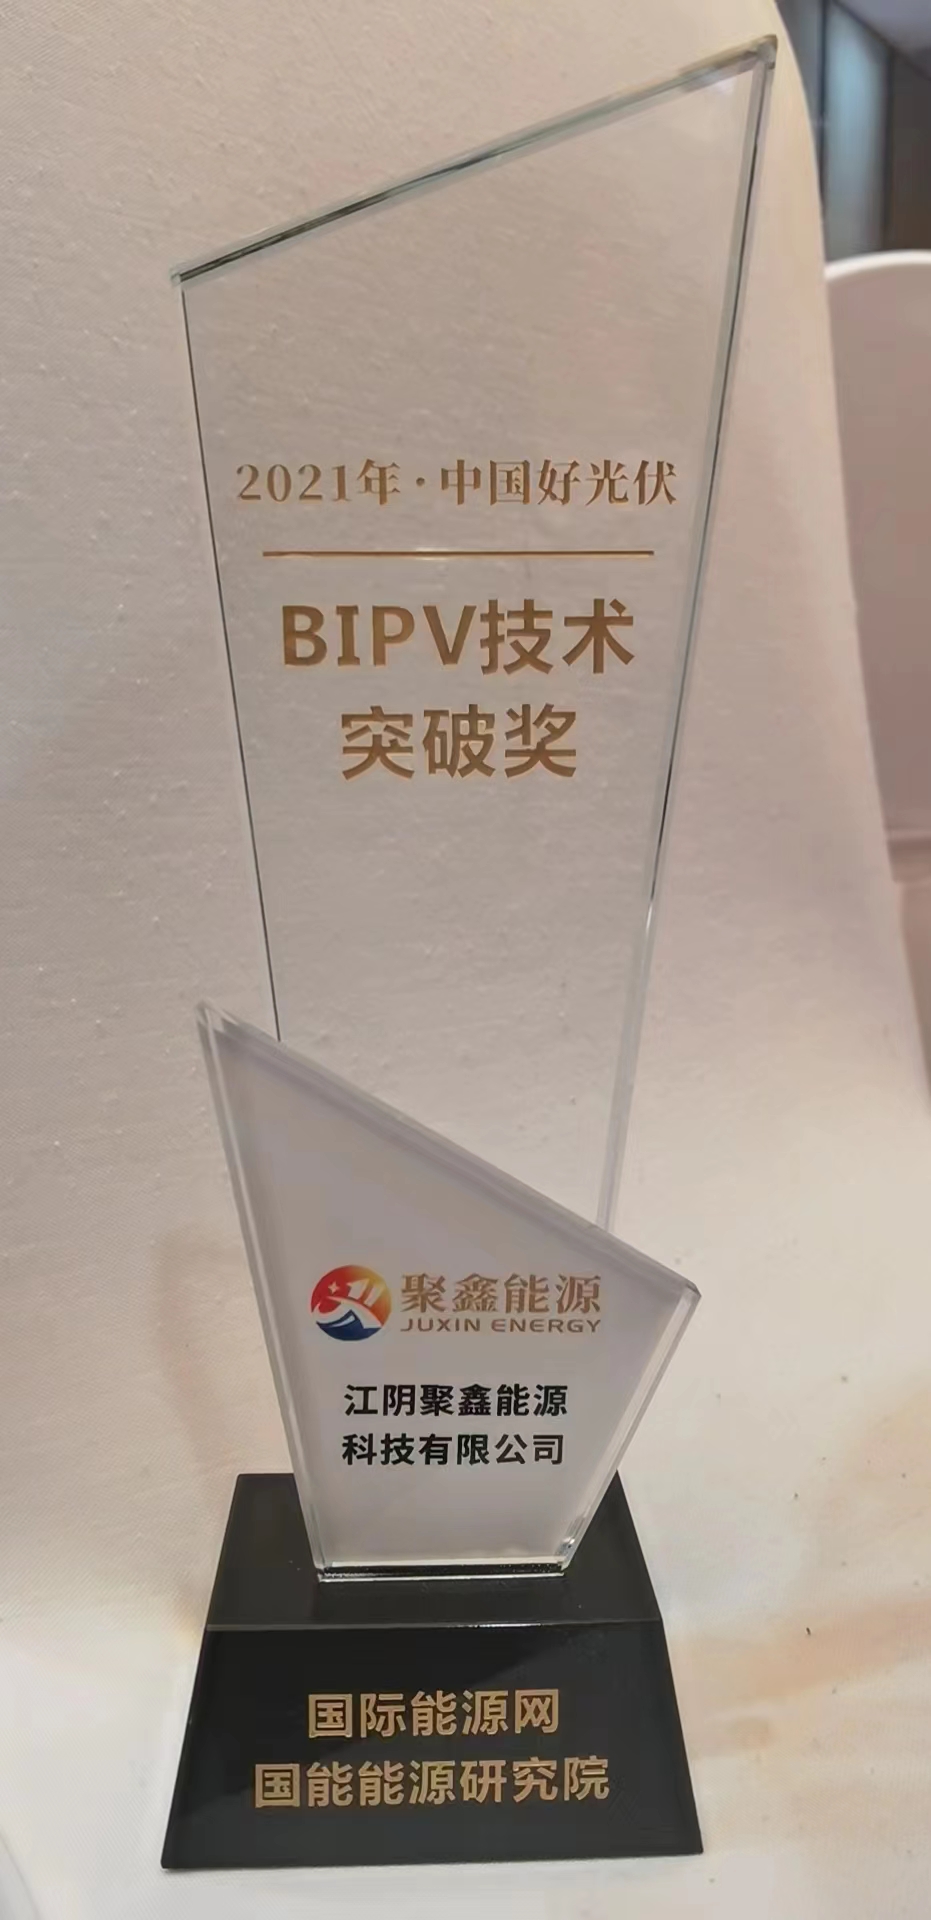 2021年中国好光伏BIPV技术突破奖.jpg